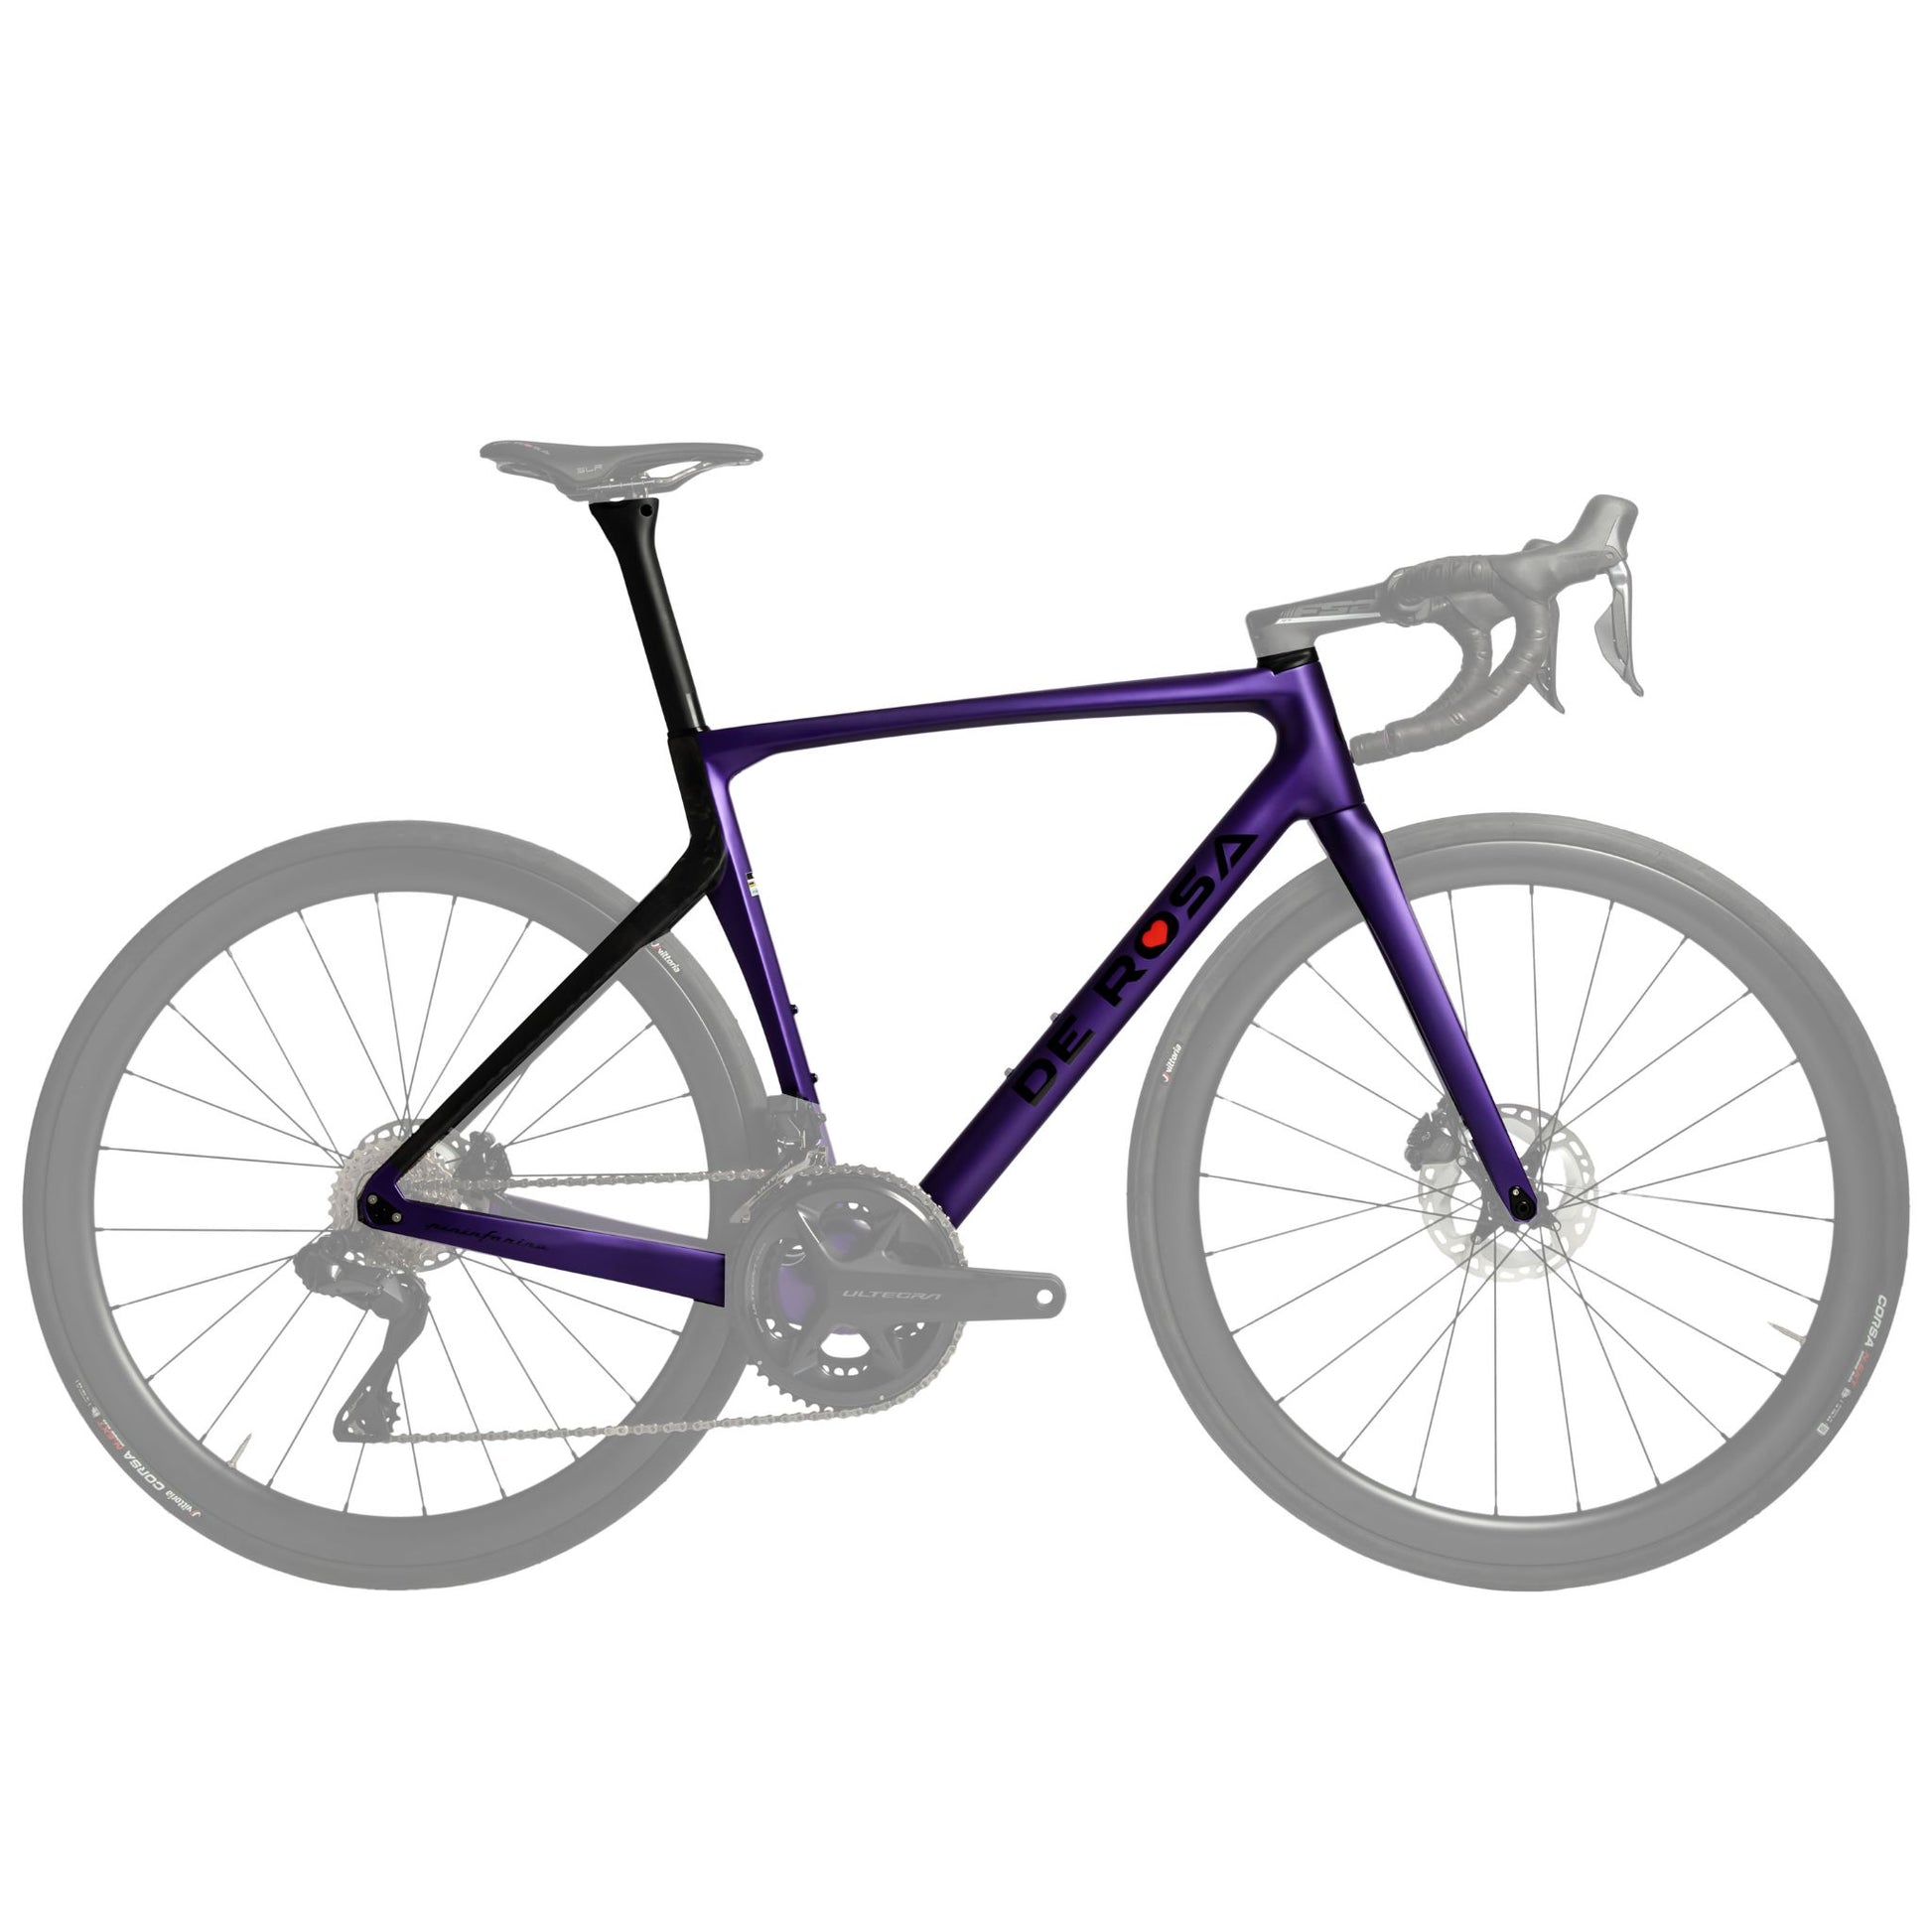 Purple De Rosa frameset, aerodynamic disc